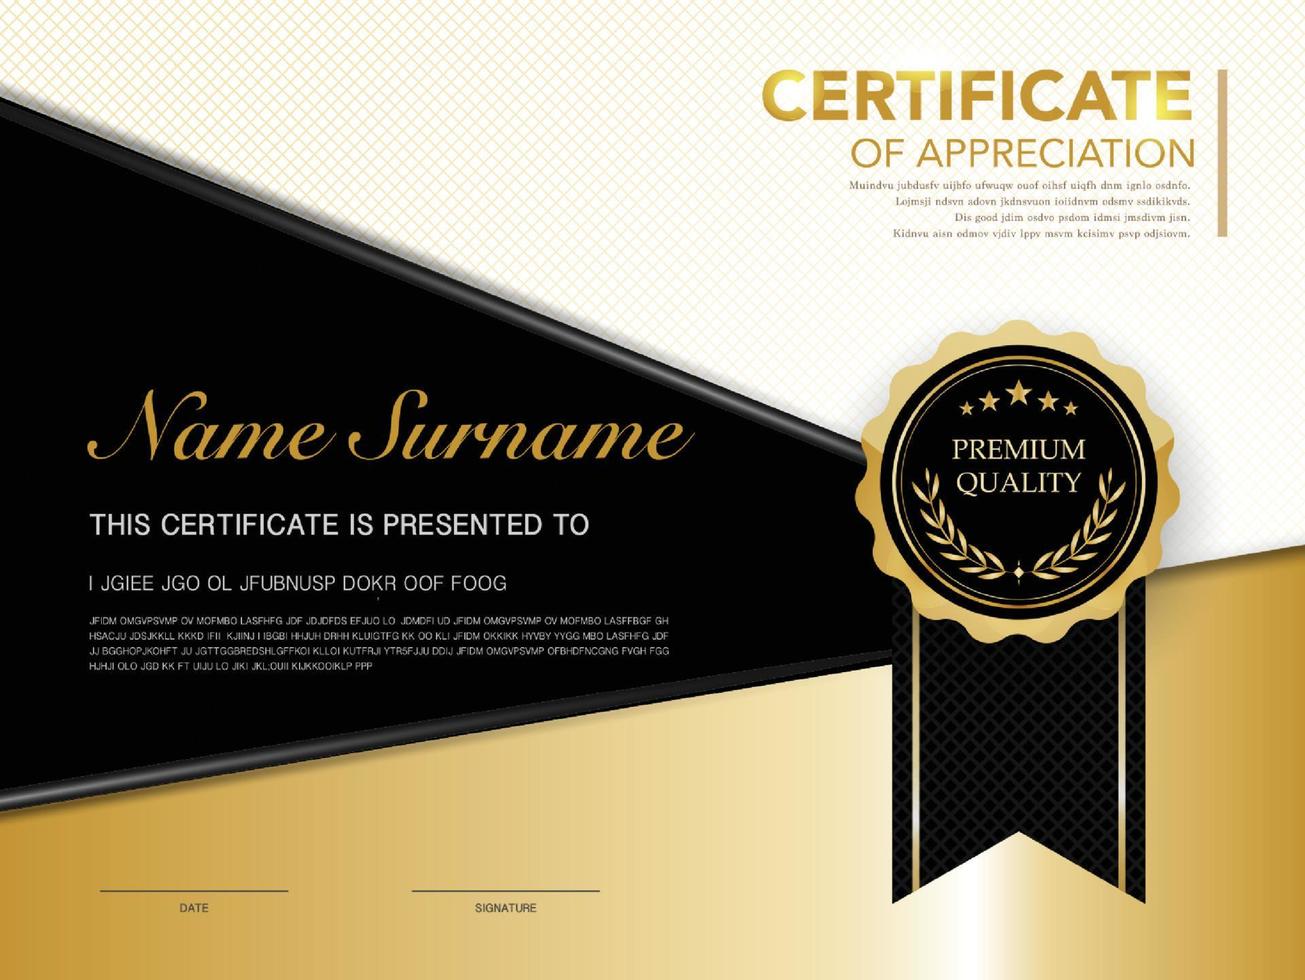 modelo de certificado de diploma cor preta e dourada com luxo e estilo moderno imagem vetorial vetor